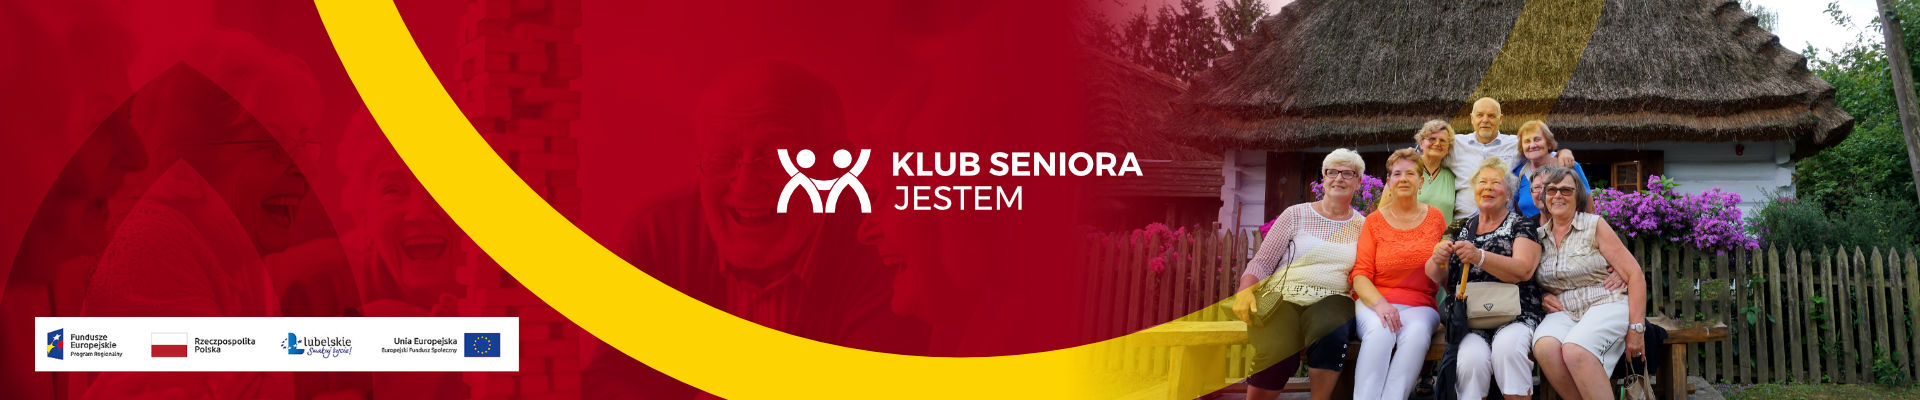 klub-seniora,26.html